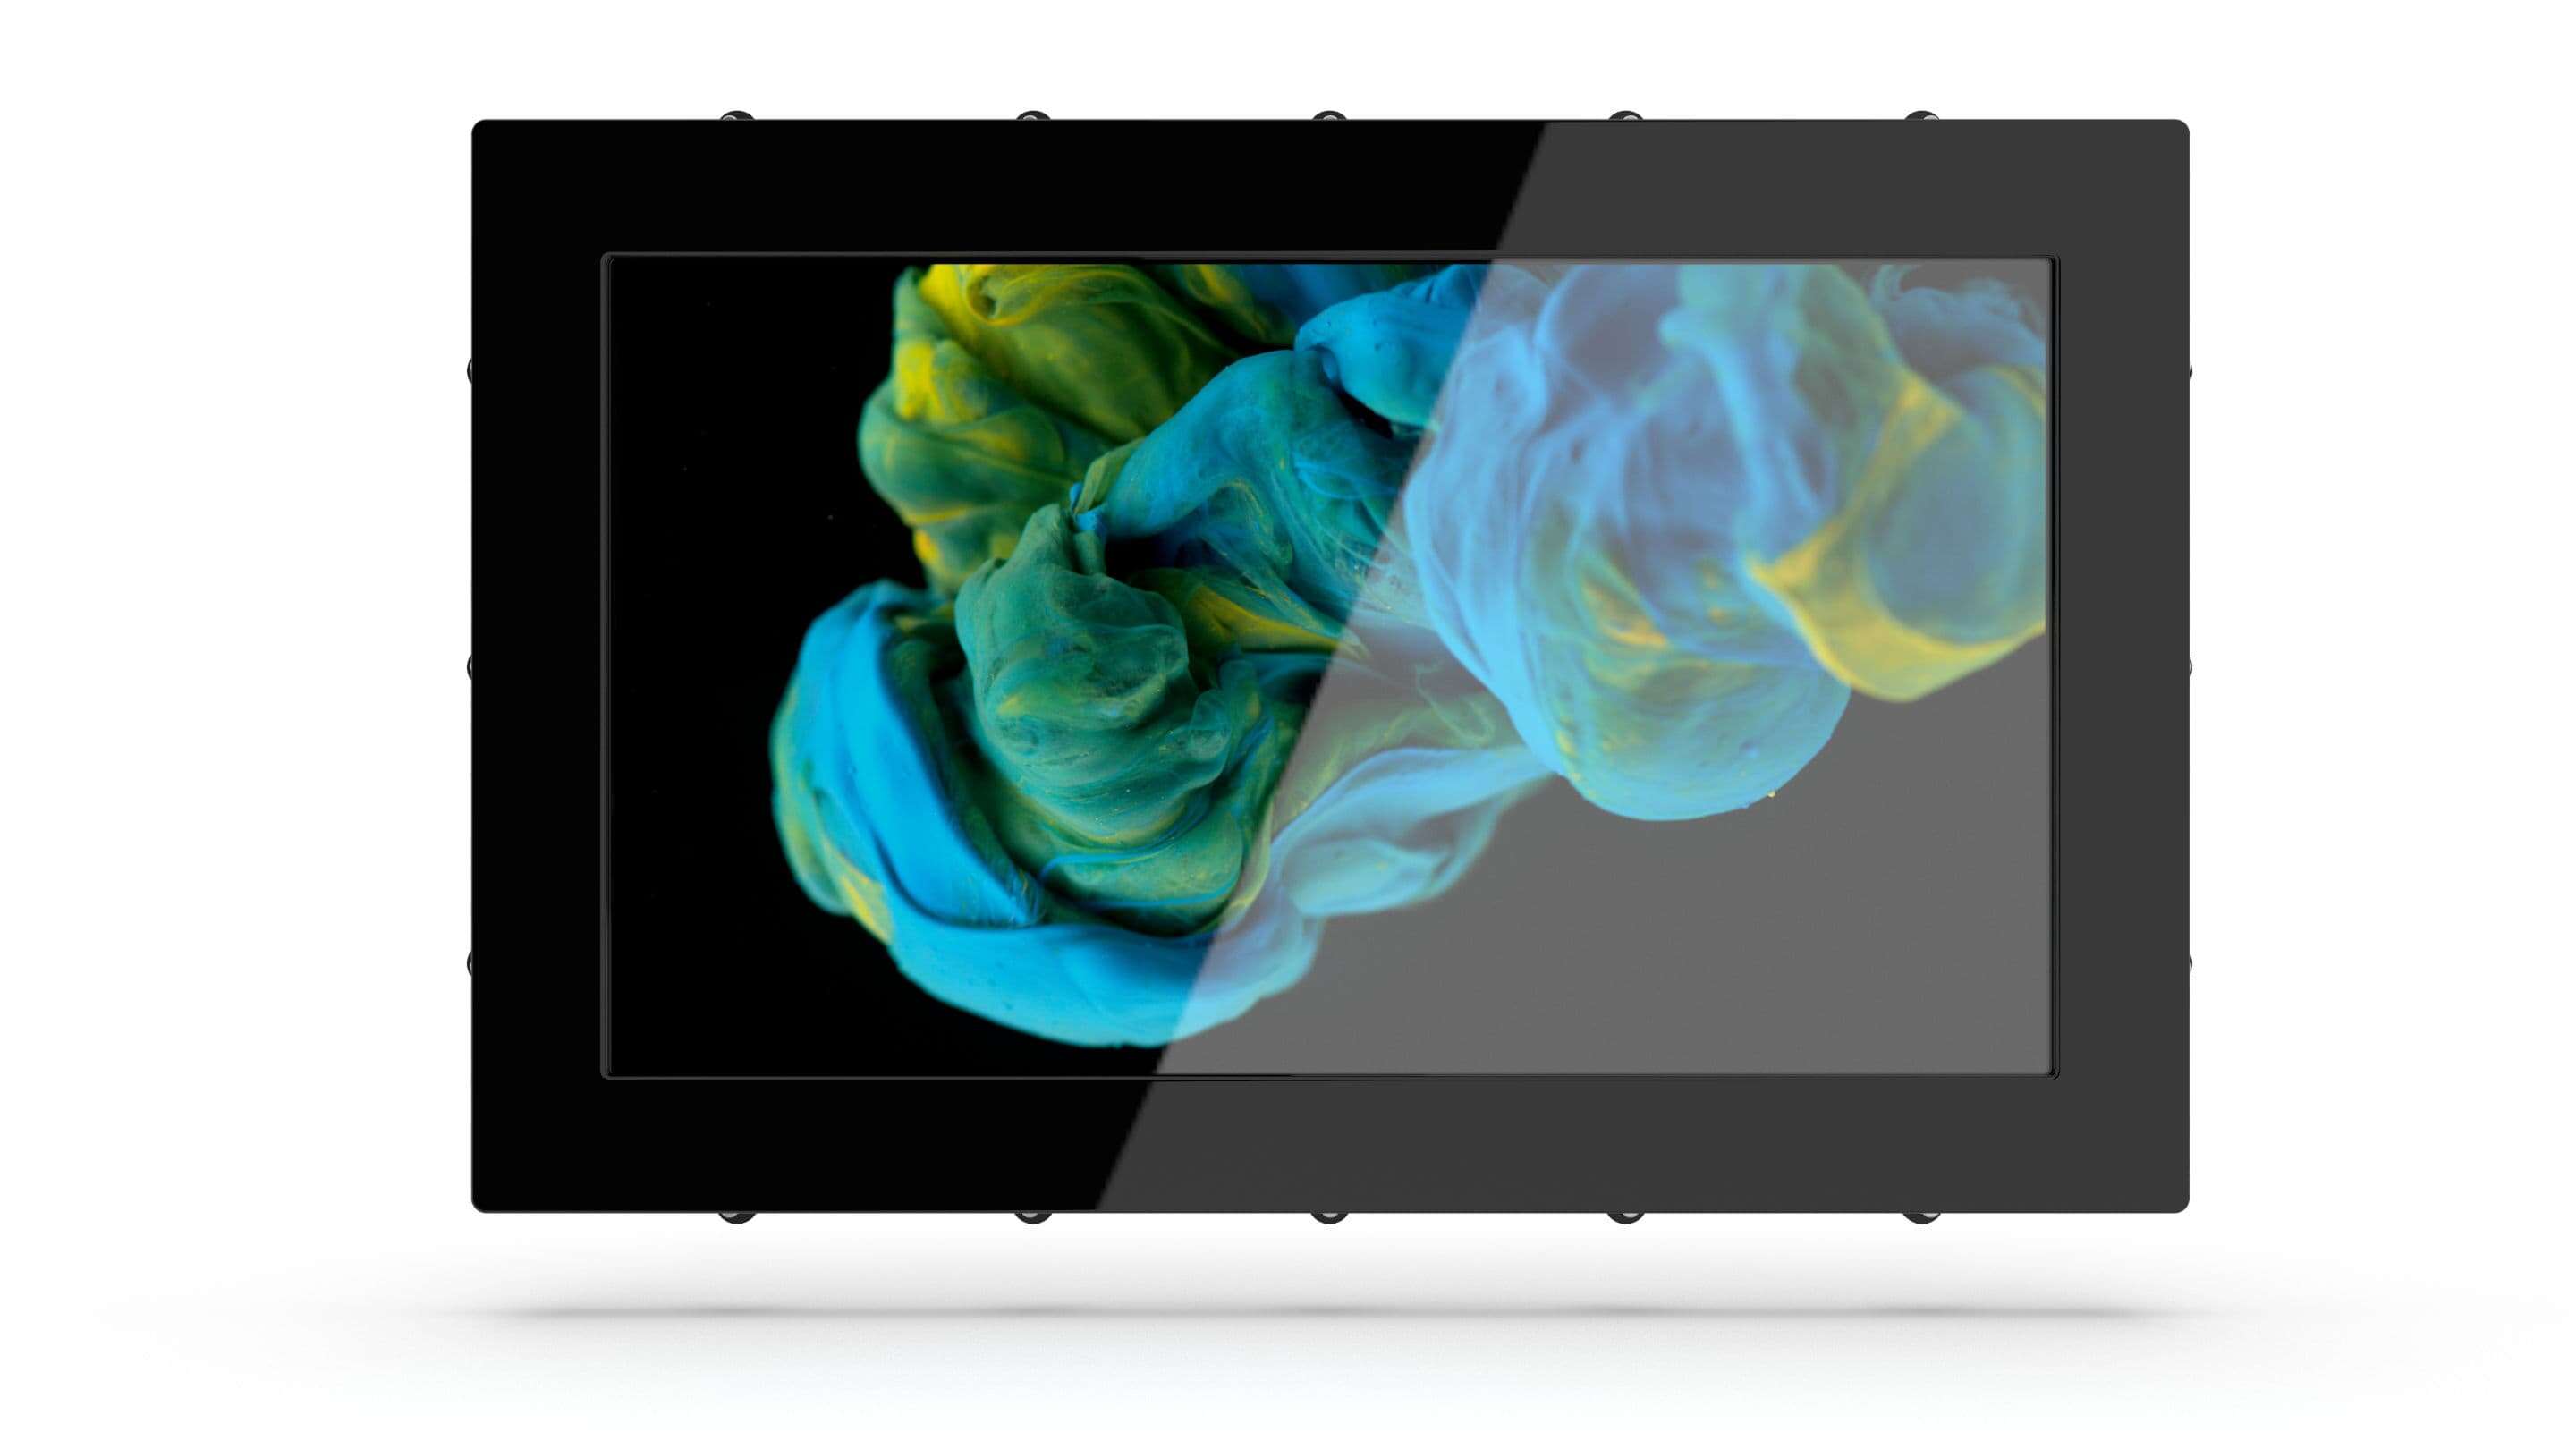 Home - Industrial Monitora un tablet nero con uno schermo che mostra vernice blu e gialla